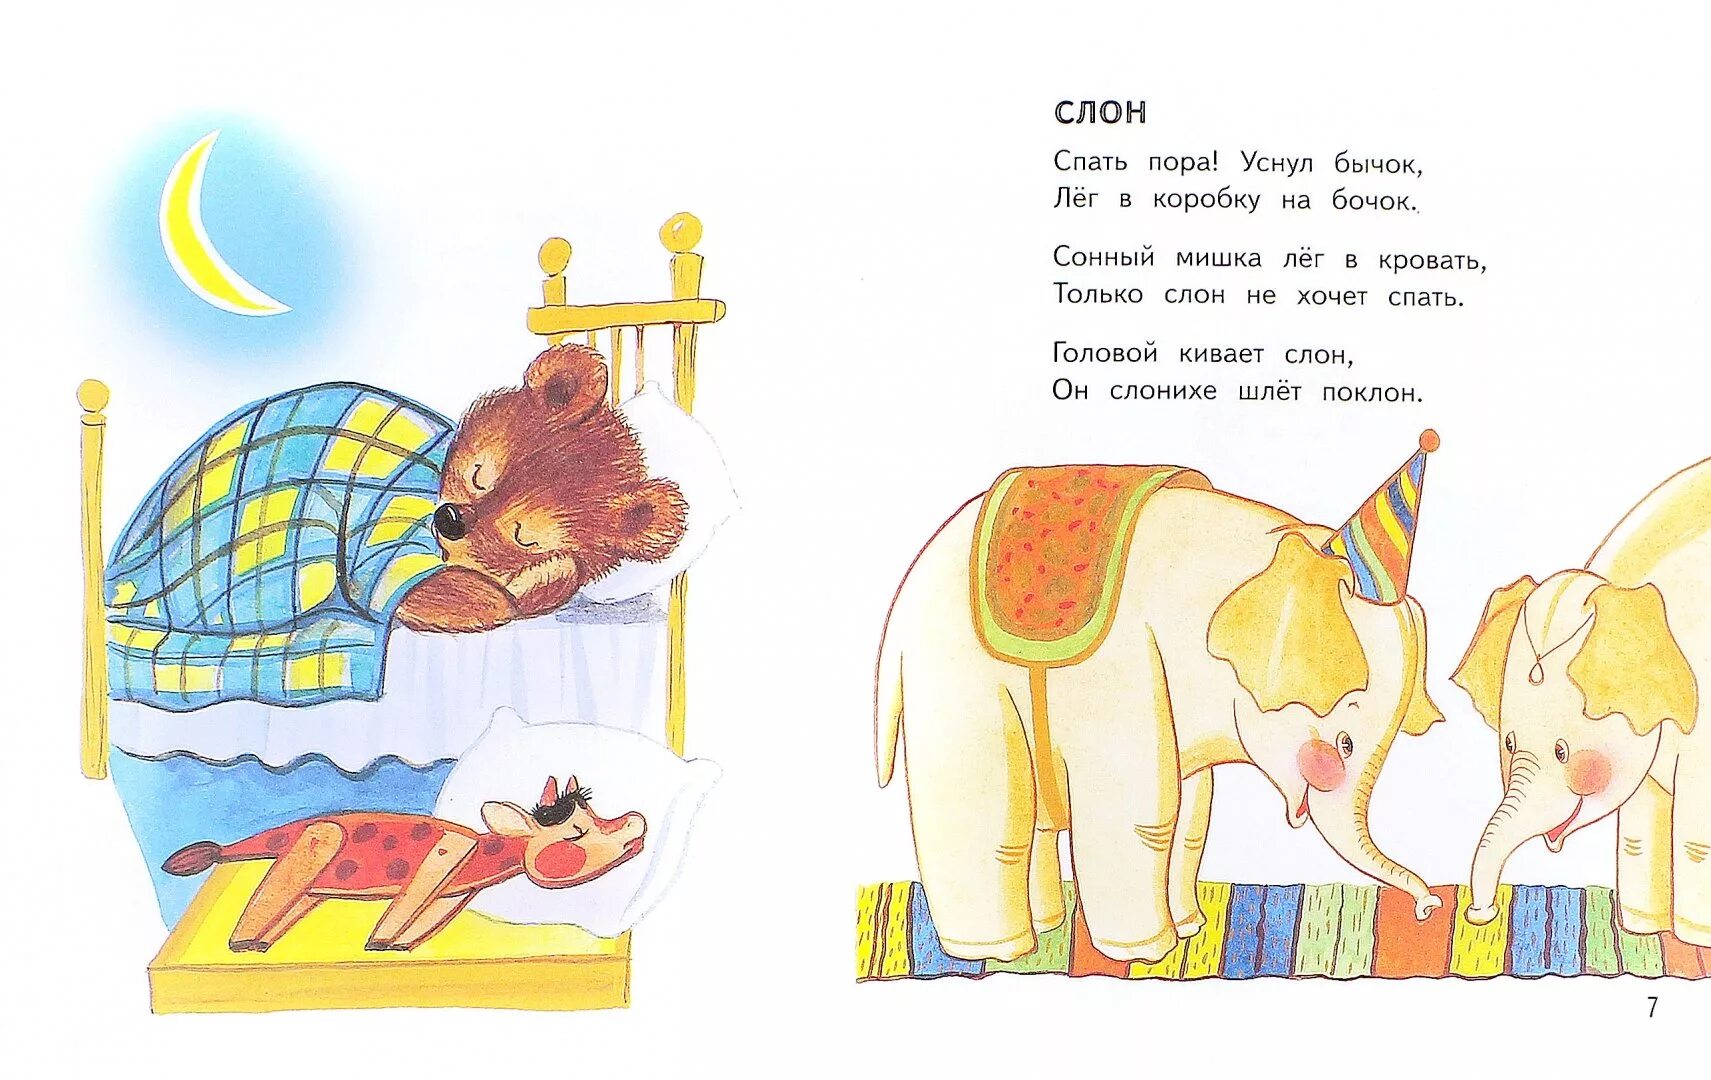 Стихи Агнии Барто спать пора уснул бычок. Иллюстрация к стихотворению Агнии Барто слон. Колыбельная слона